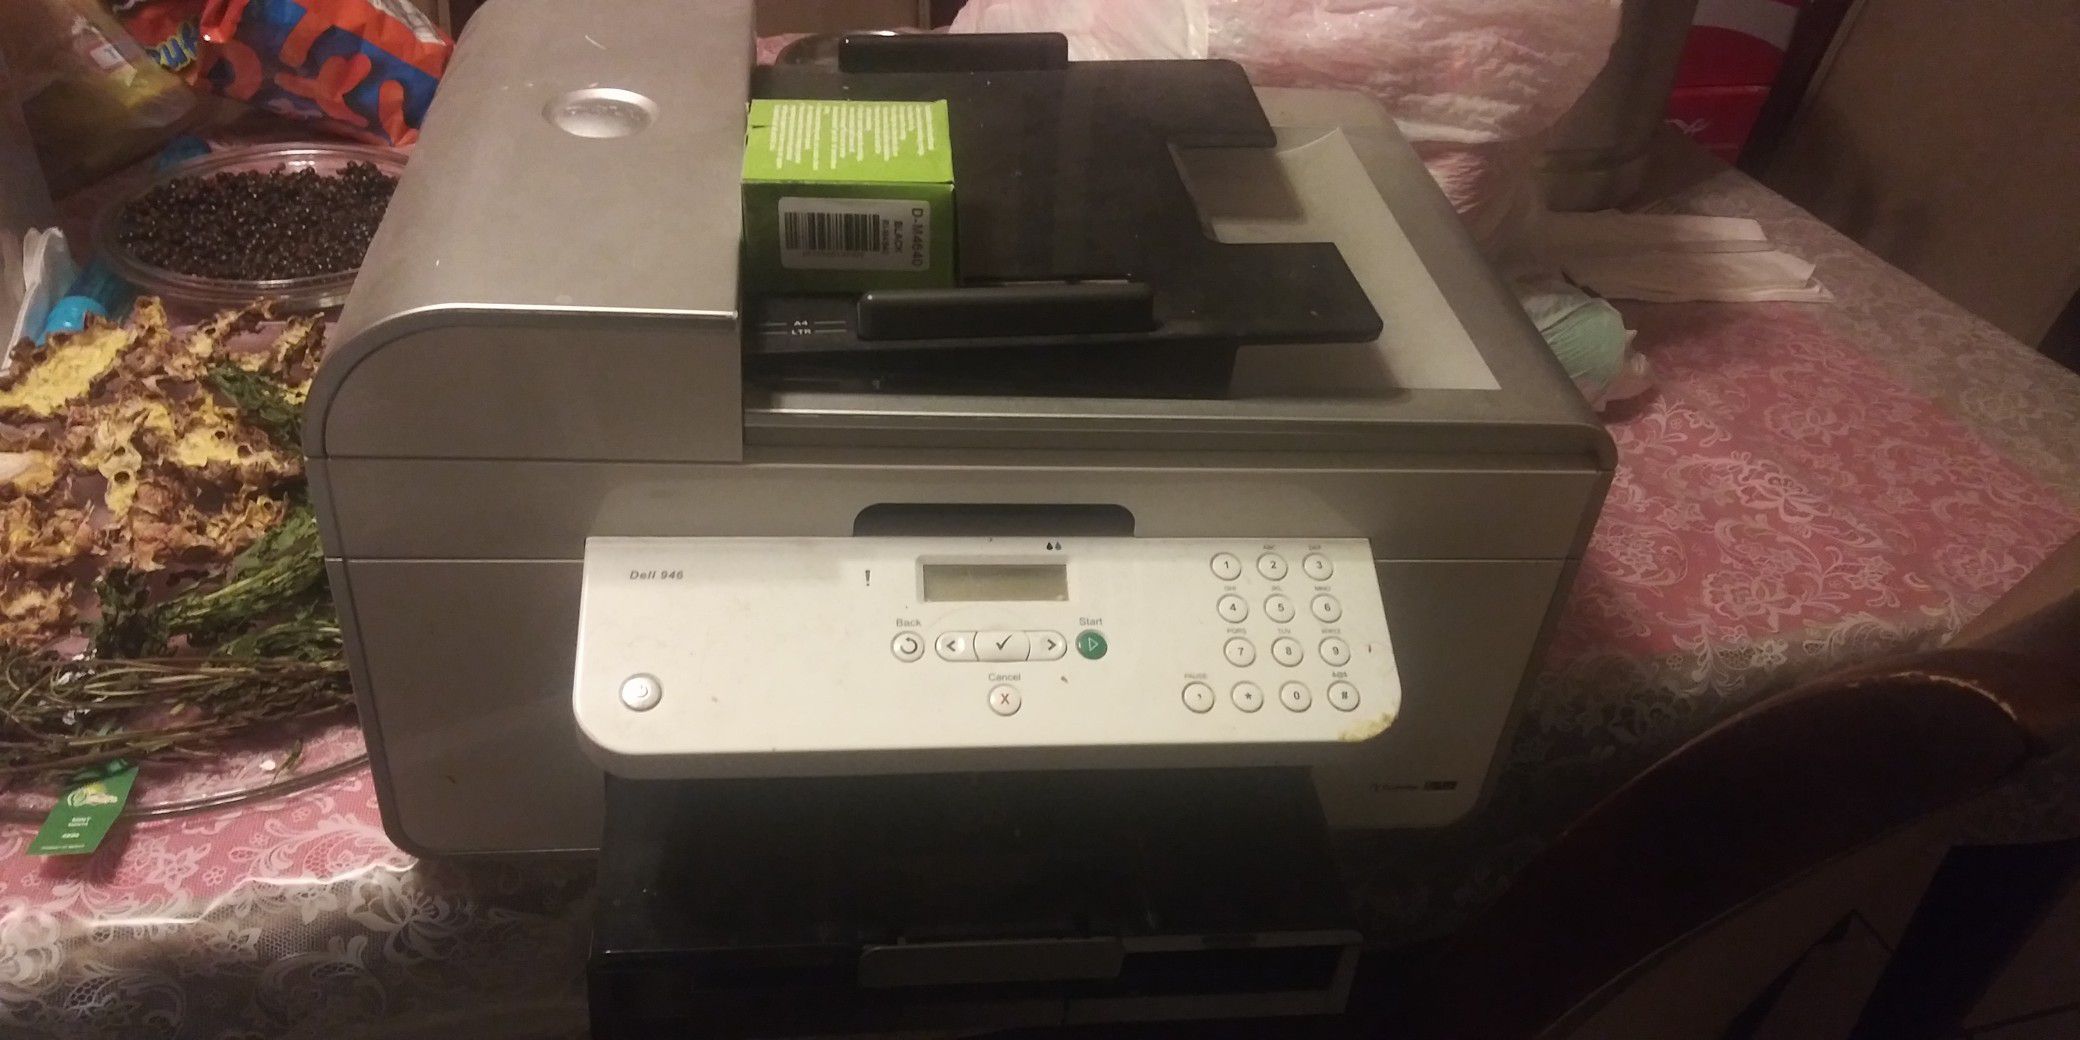 Printer Dell 946 free